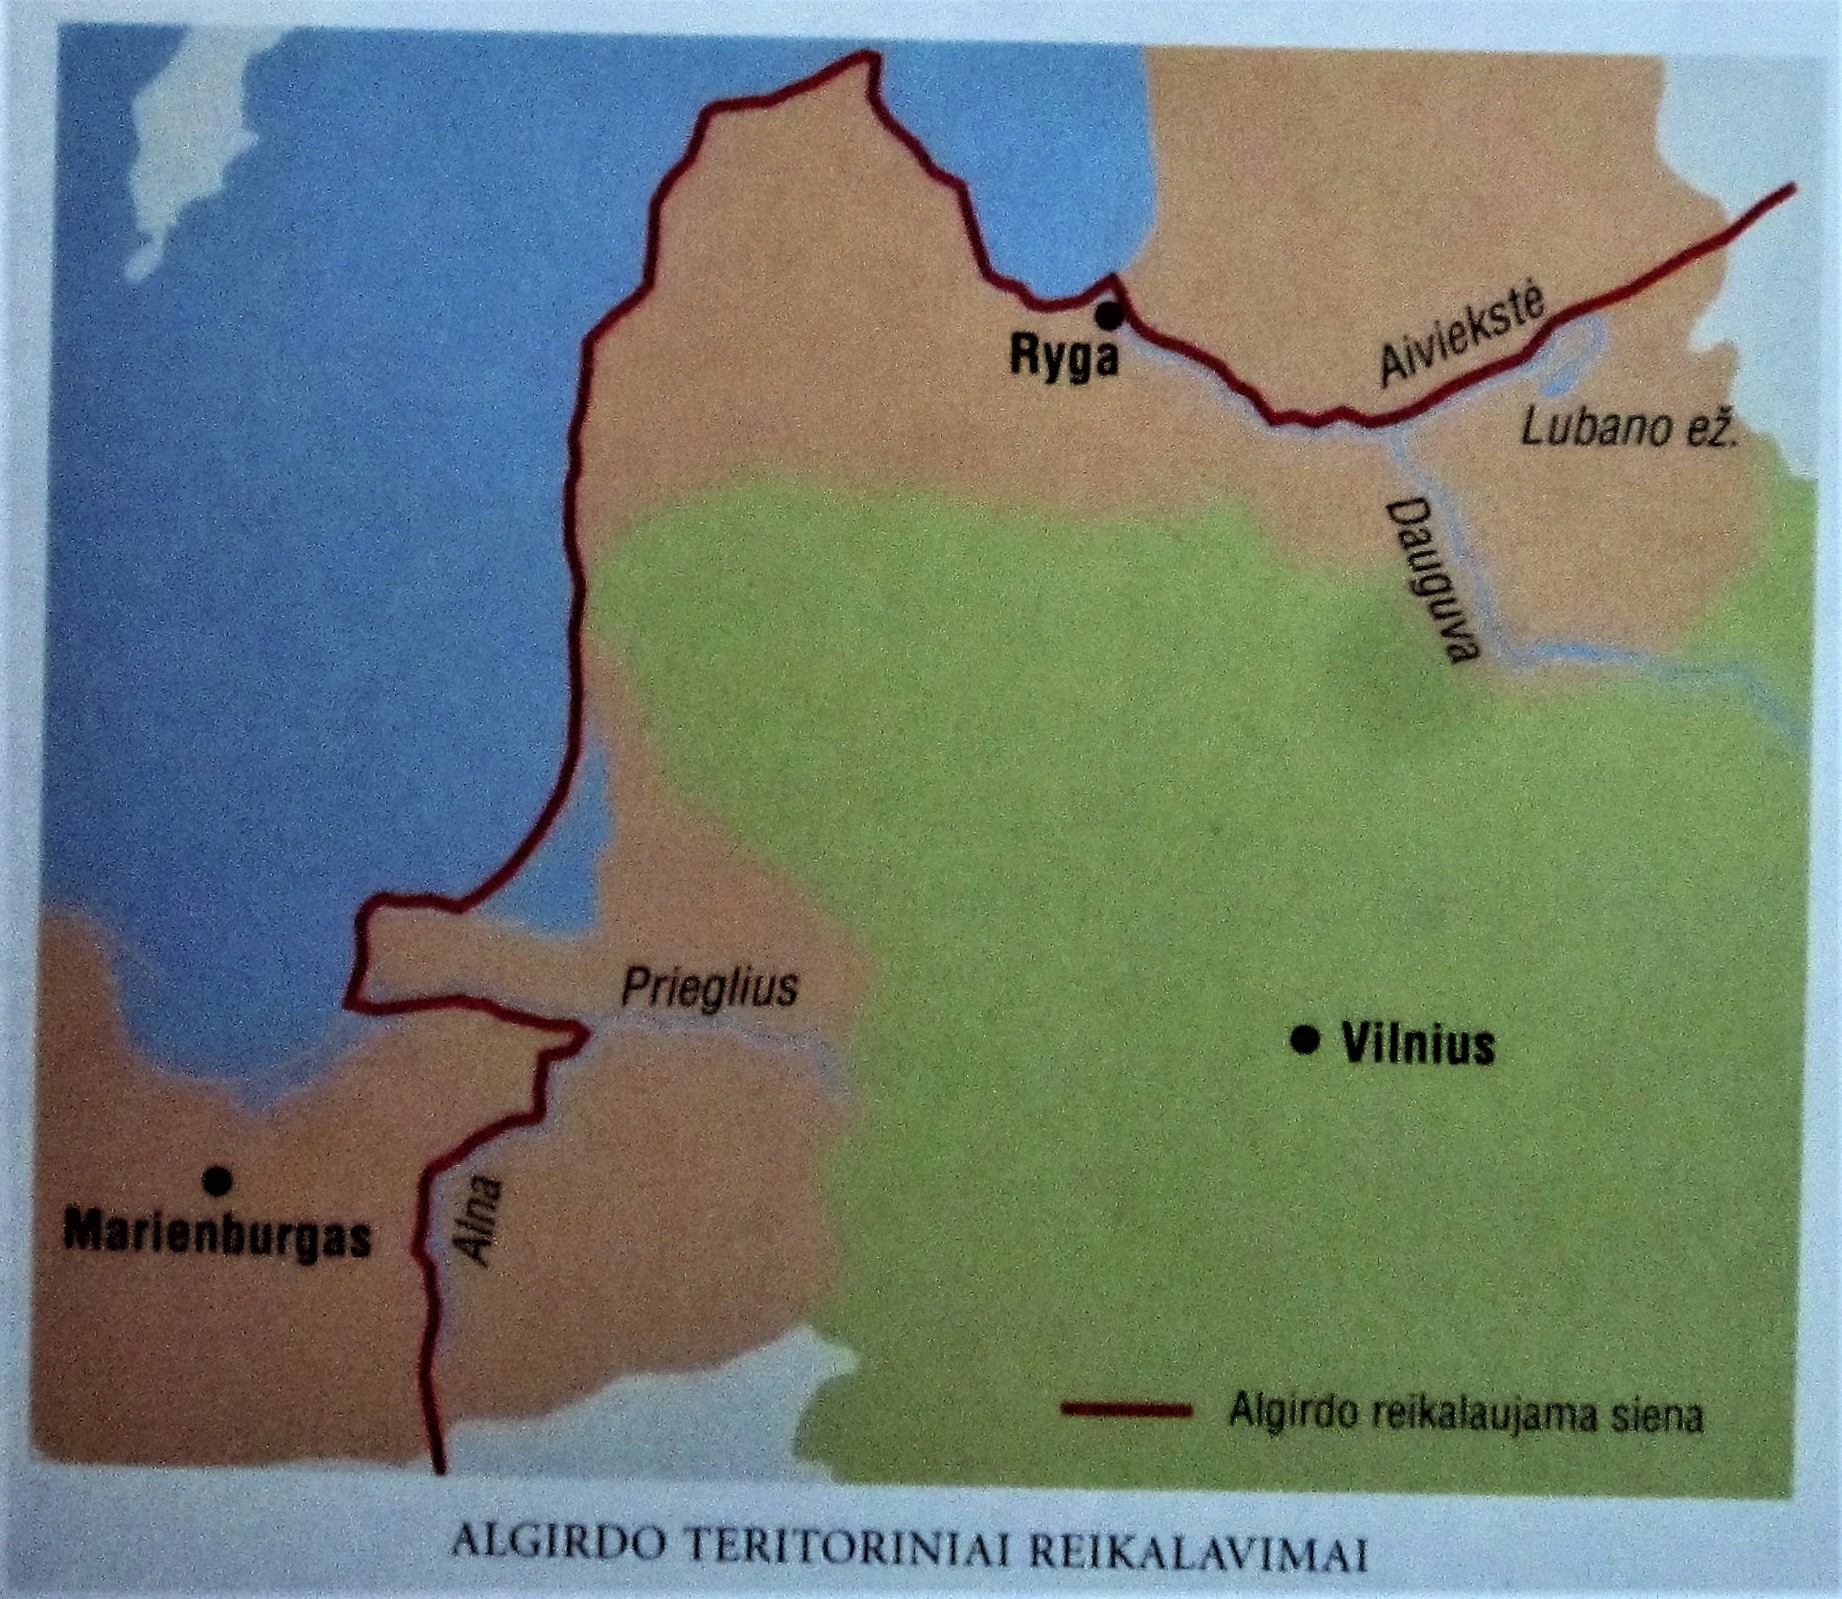 Algirdo teritoriniai reikalavimai 1358 m..jpg